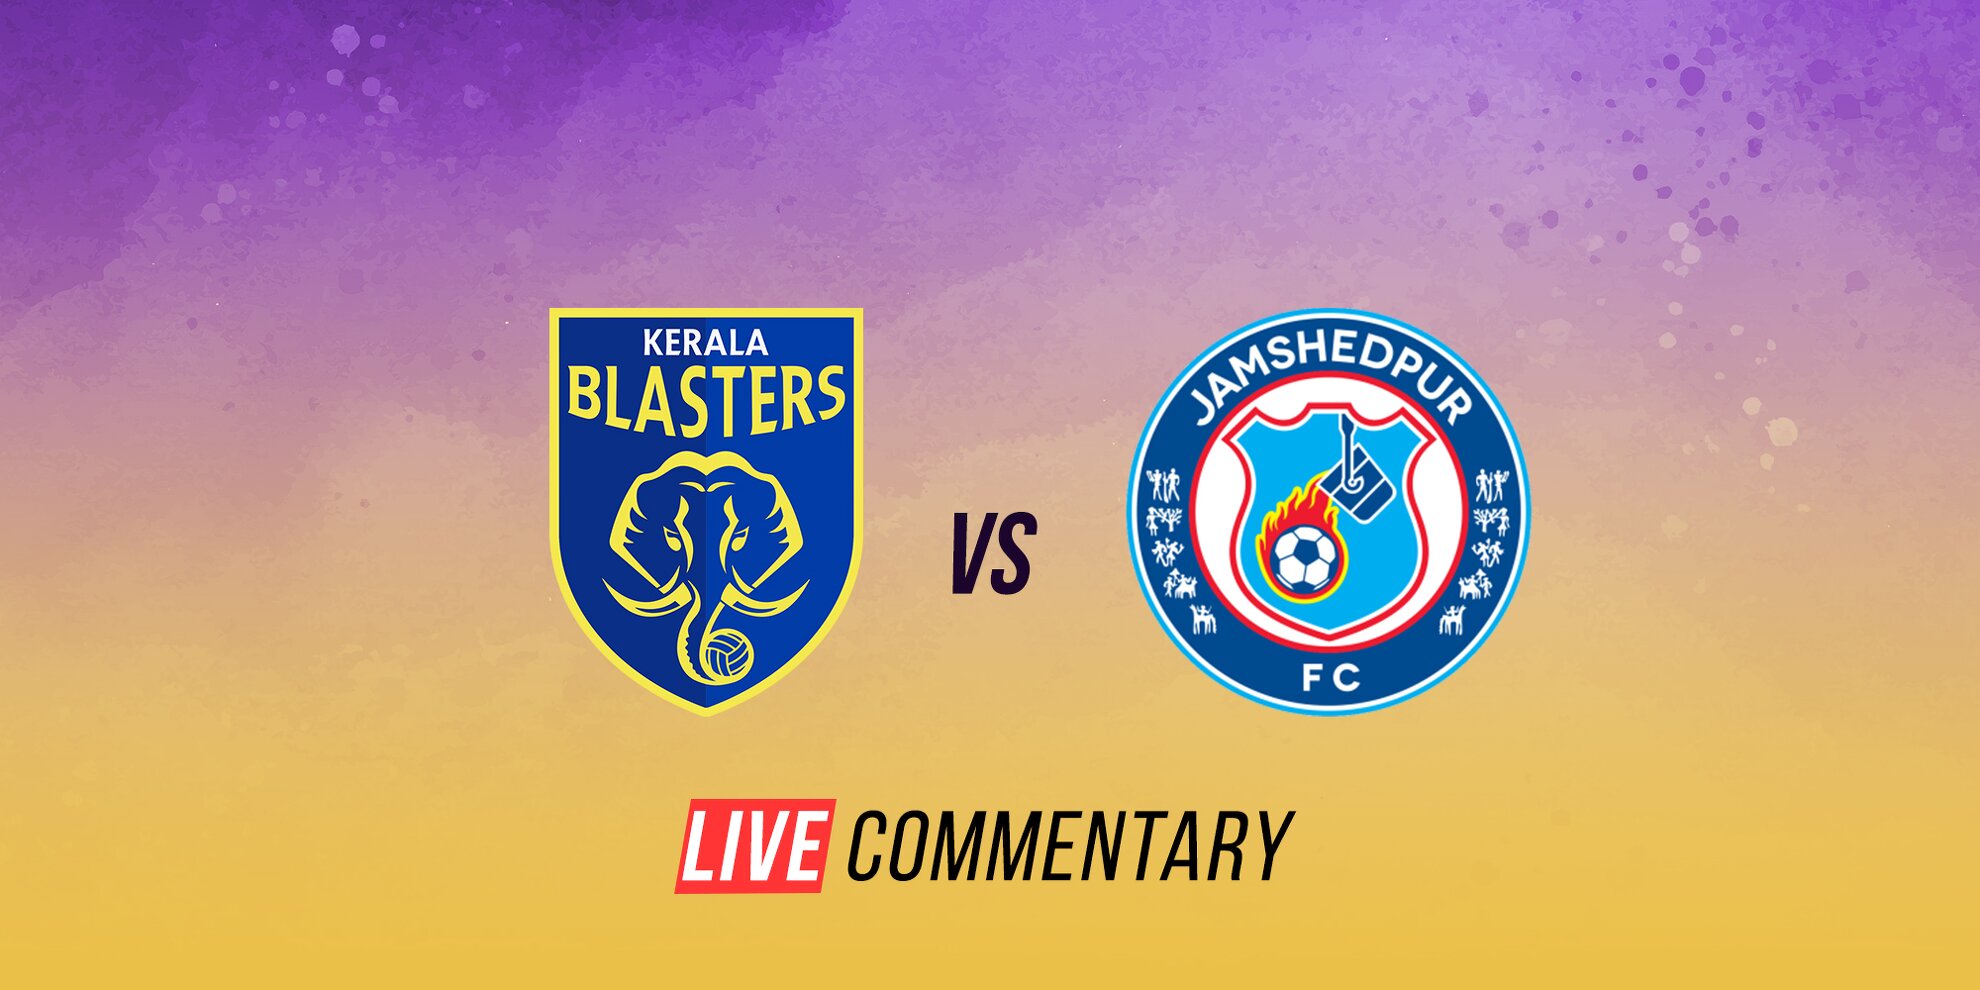 Kerala Blasters vs Jamshedpur FC Live Comm